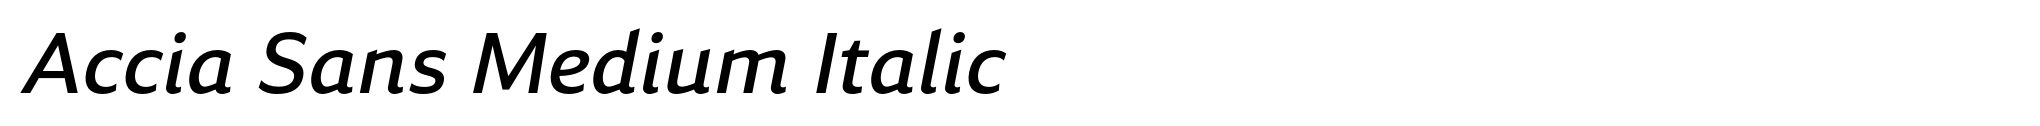 Accia Sans Medium Italic image